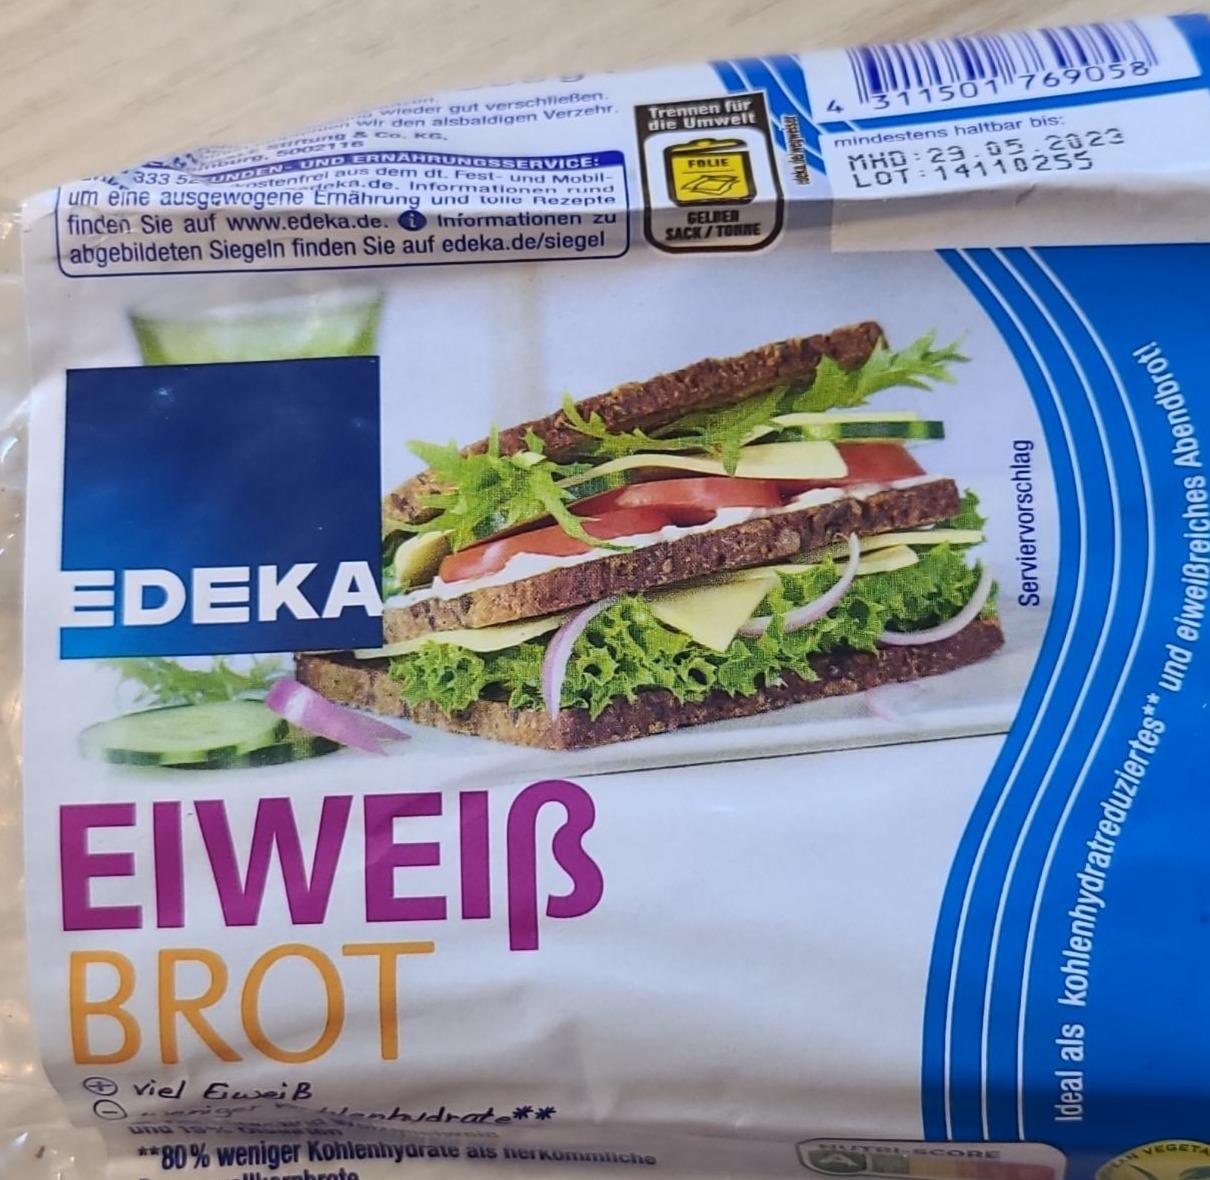 Фото - хлеб ржаной для сендвичей Edeka